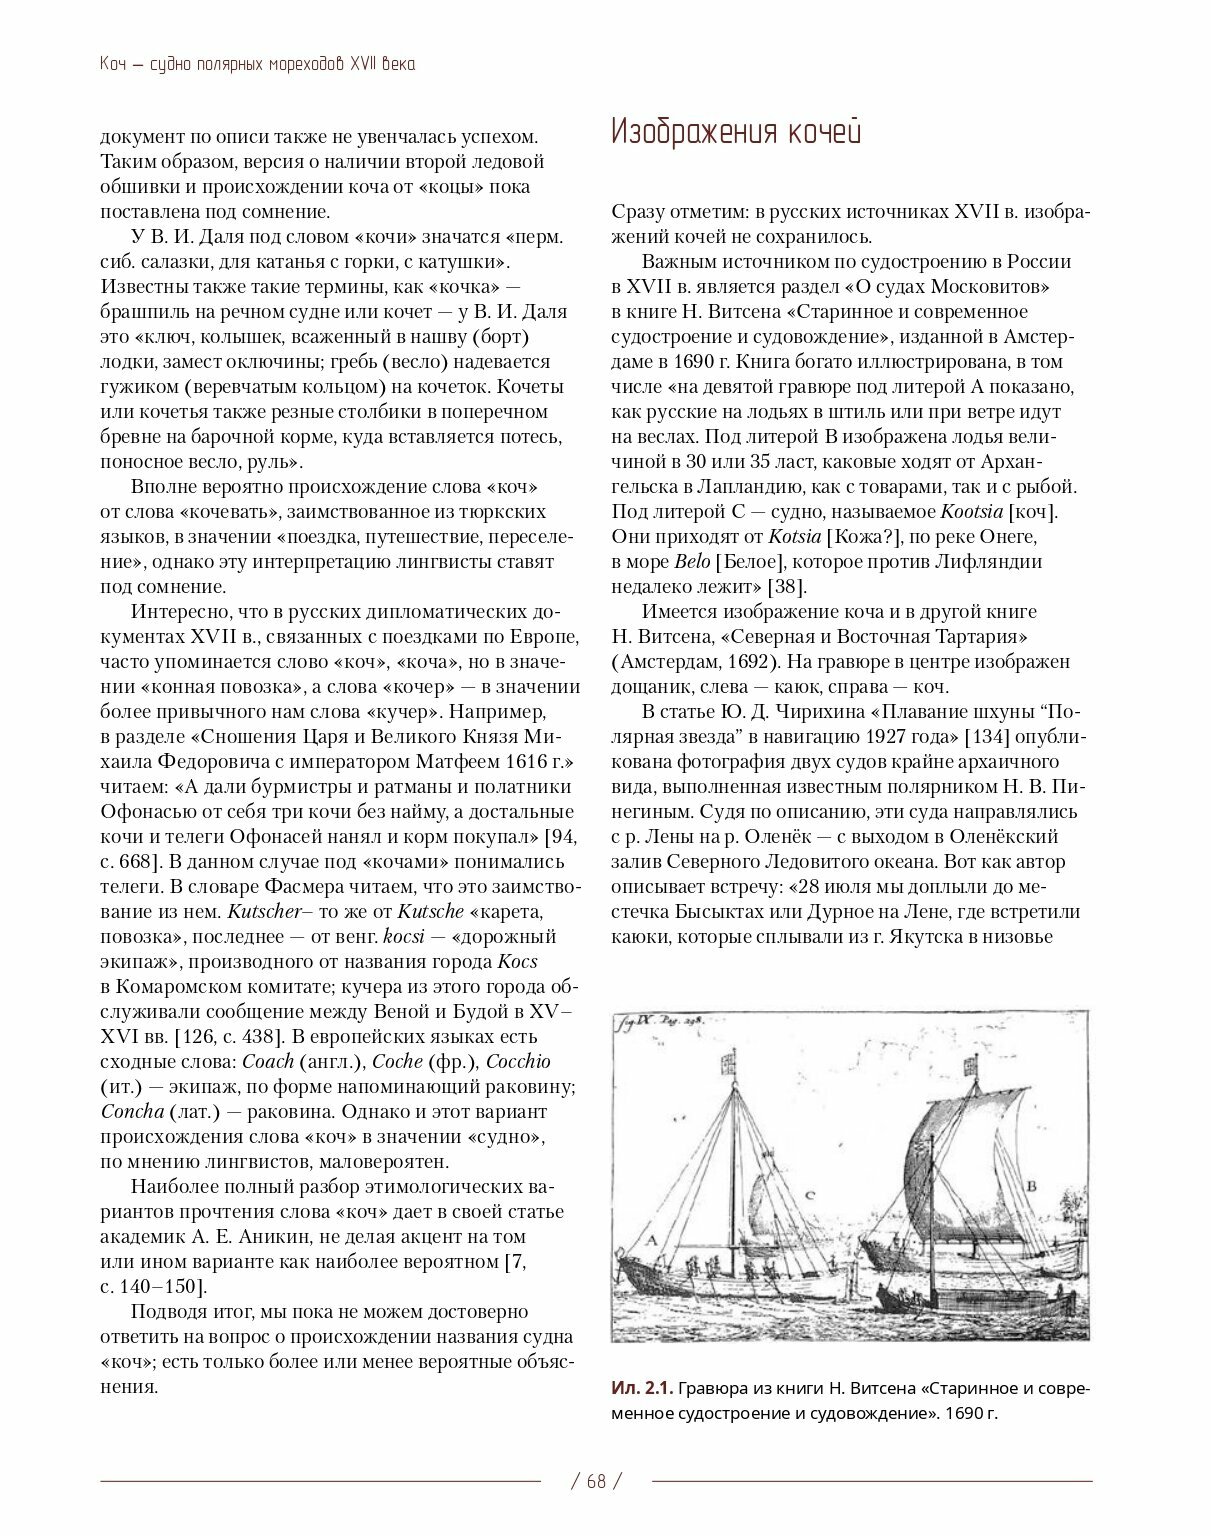 Коч — судно полярных мореходов XVII века. Новые данные - фото №4